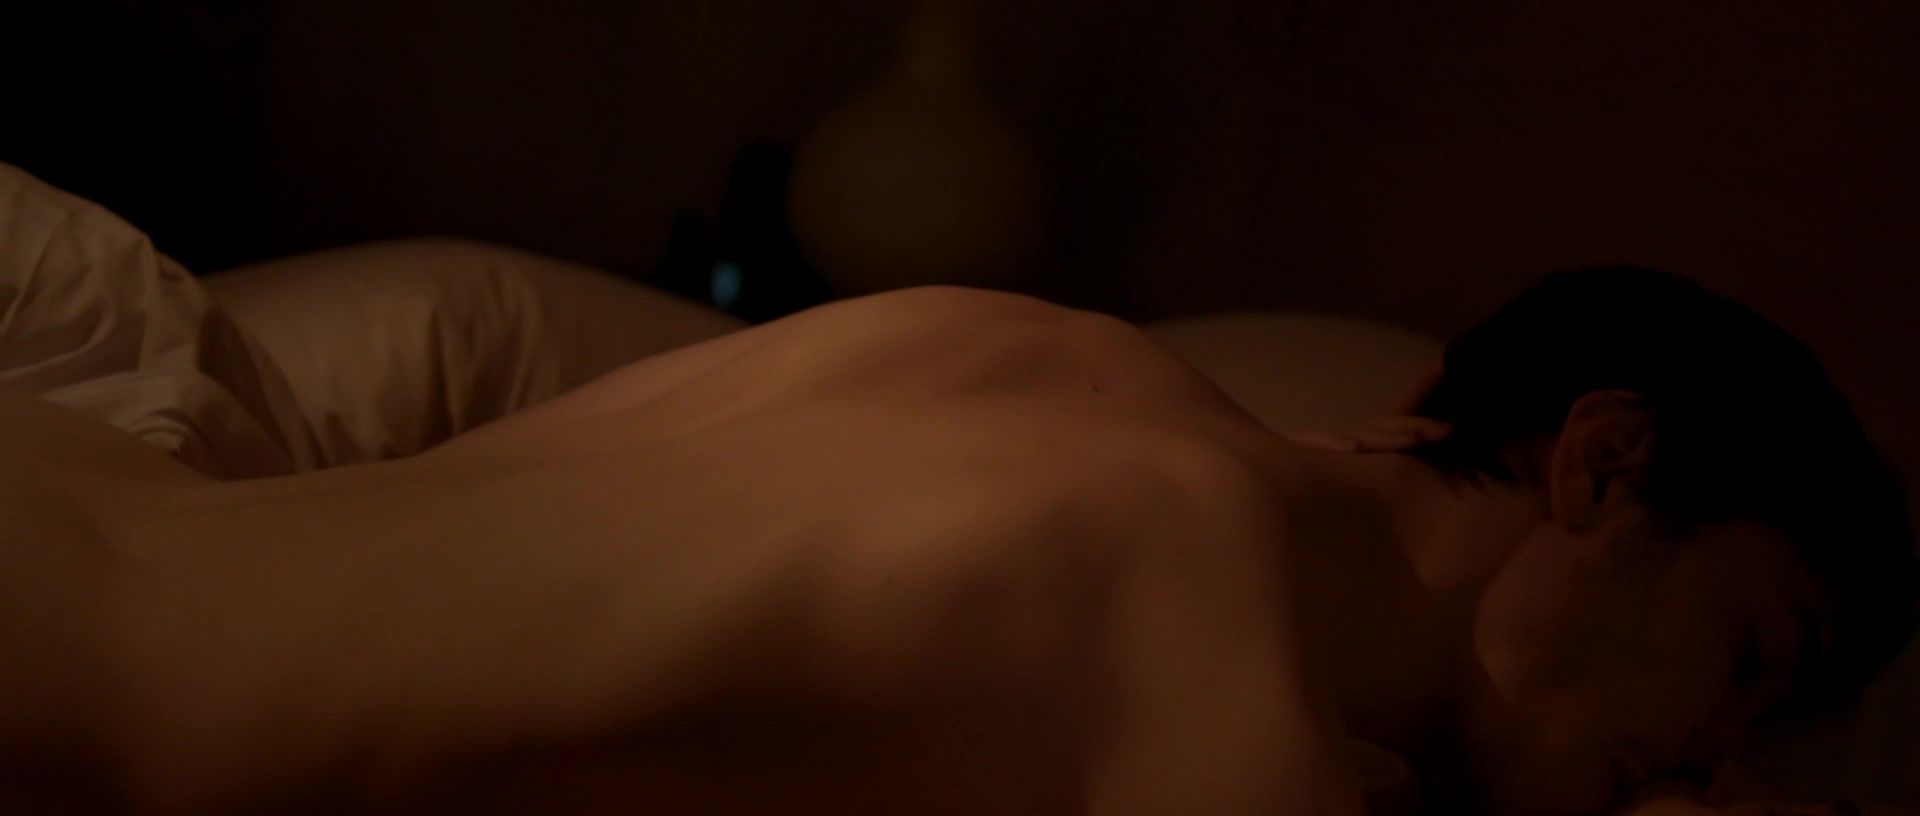 Smoking Naked actresses Gillian Jacobs & Scottie Thompson - The Lookalike (2014) Porno Amateur